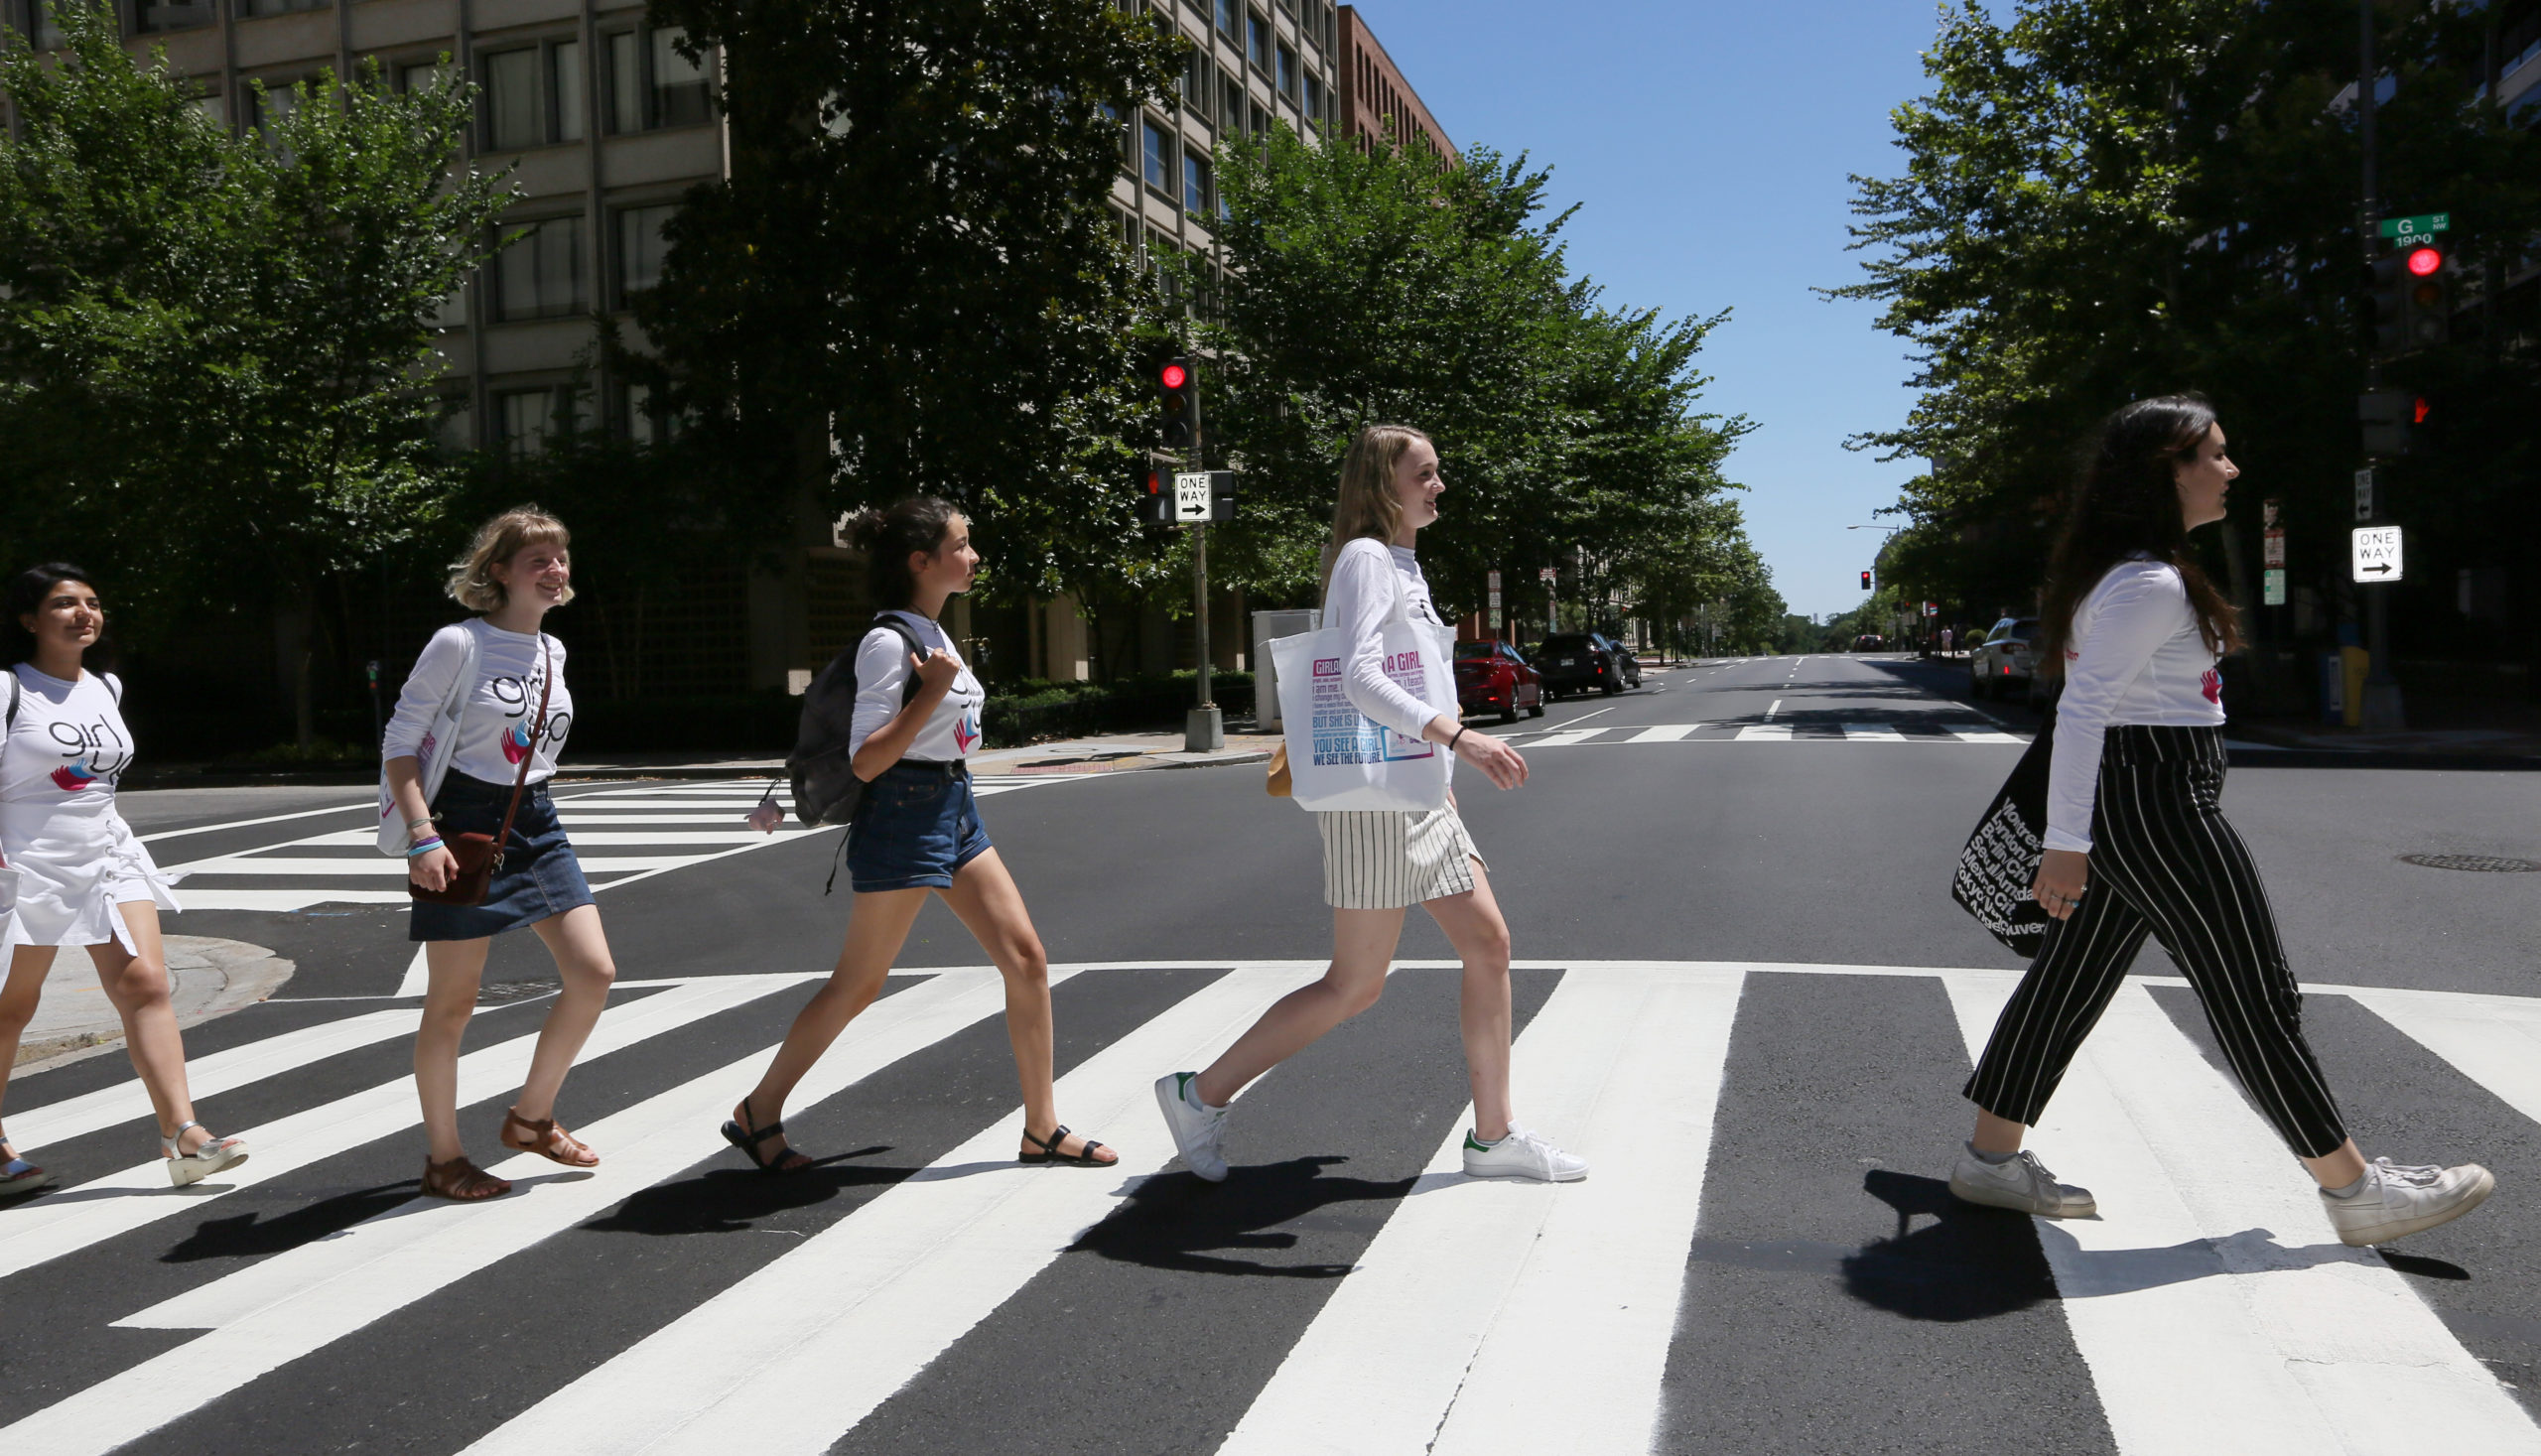 5 فتيات يعبرن الشارع واحدا تلو الآخر في مواجهة الأمام مع قميص مستشارهن المراهق على